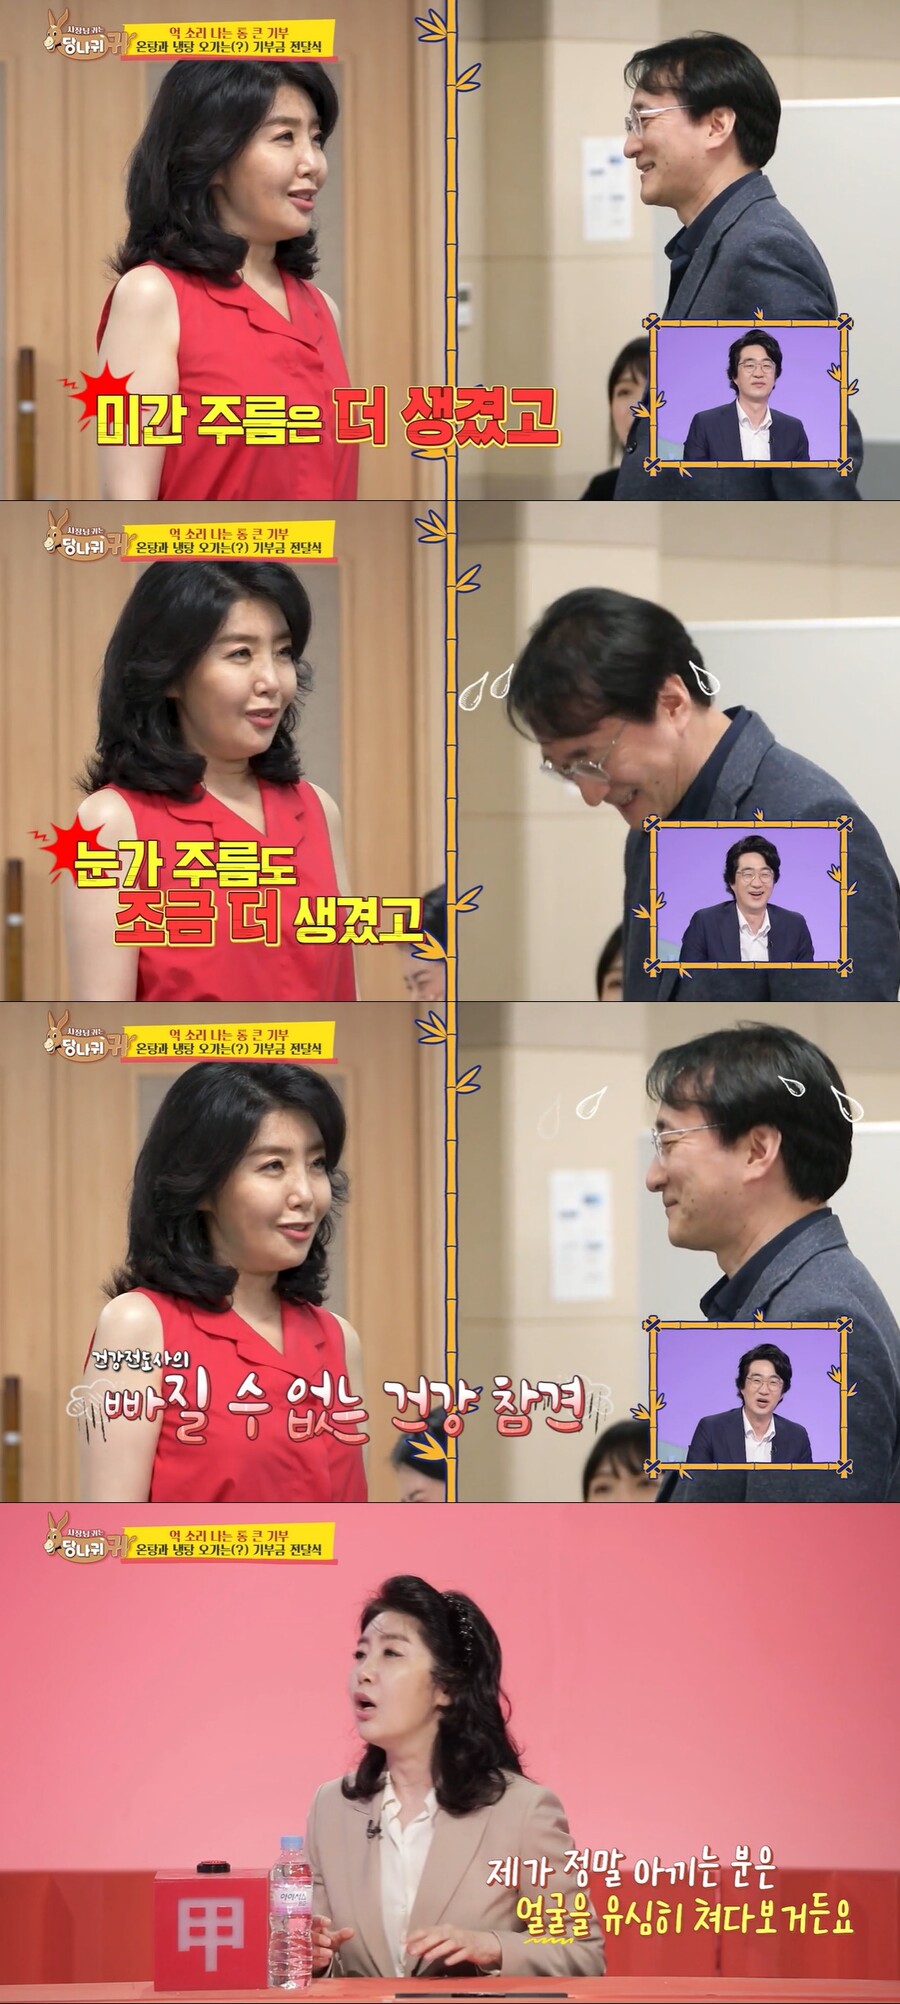 ▲ 출처| KBS2 예능프로그램 '사장님 귀는 당나귀 귀' 방송 화면 캡처